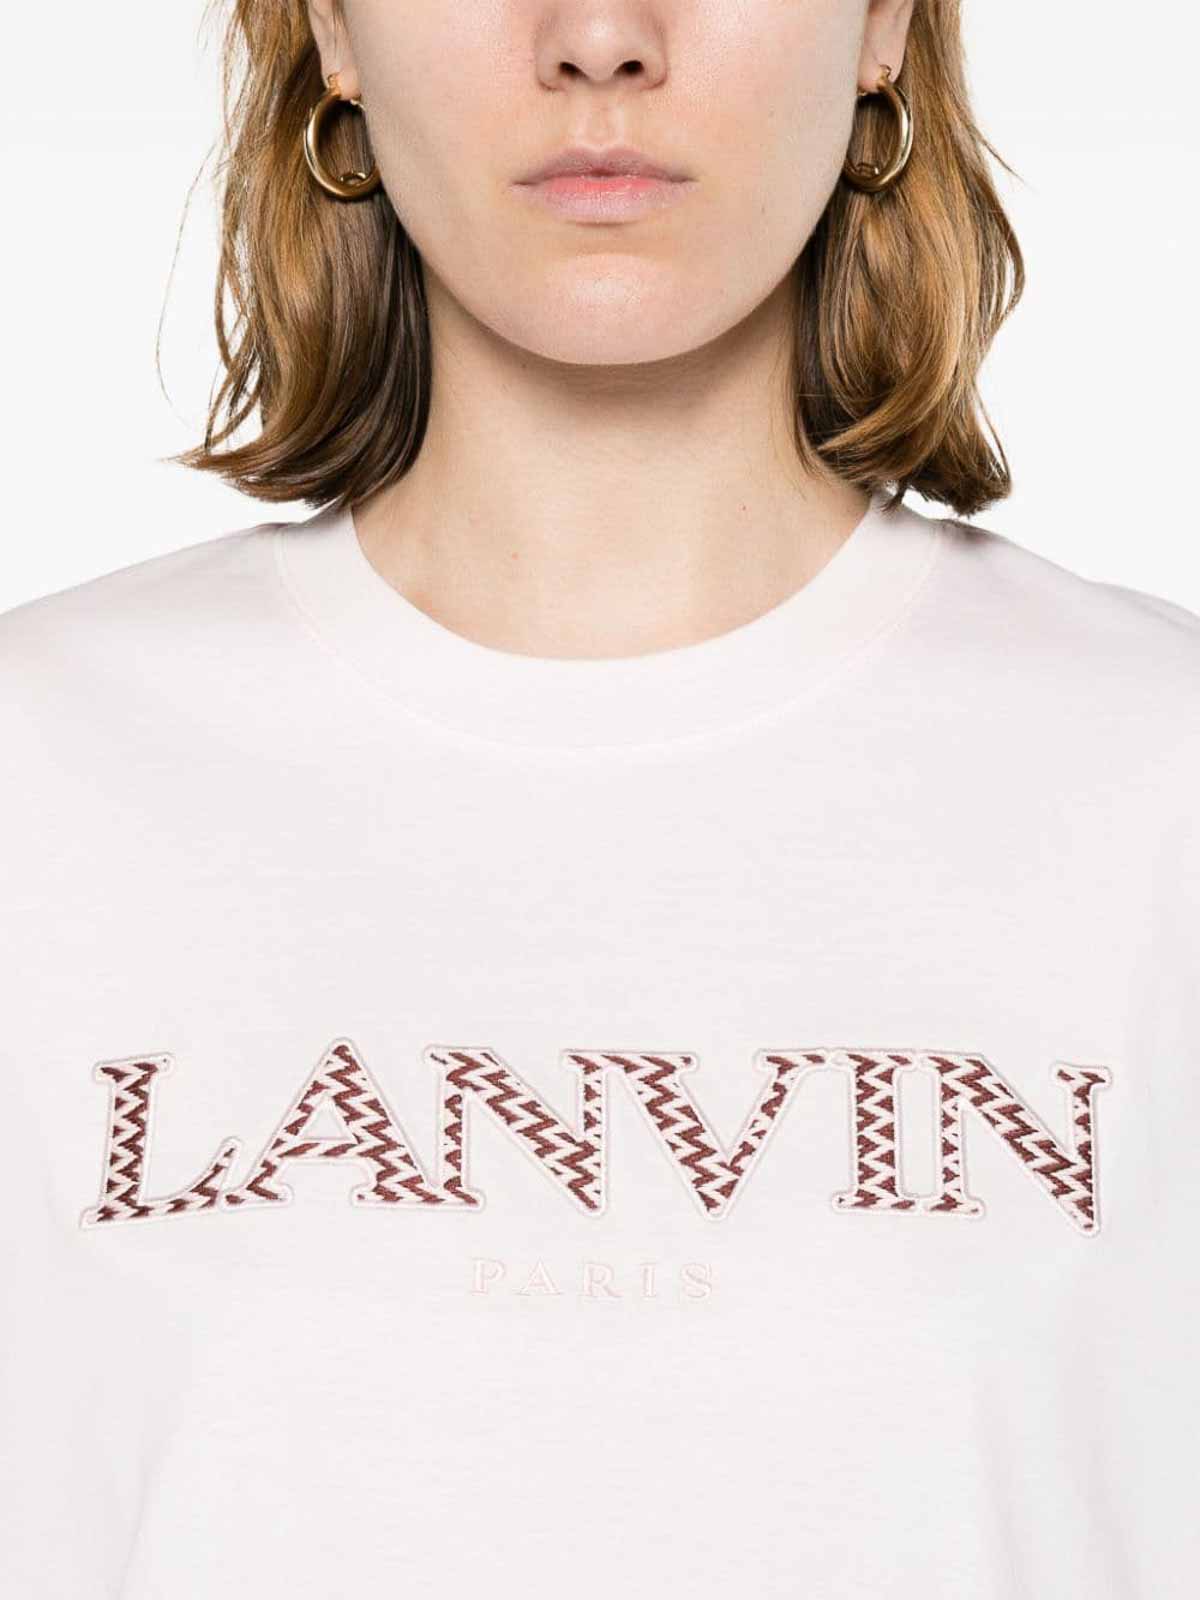 LANVIN - Cotton T-shirt